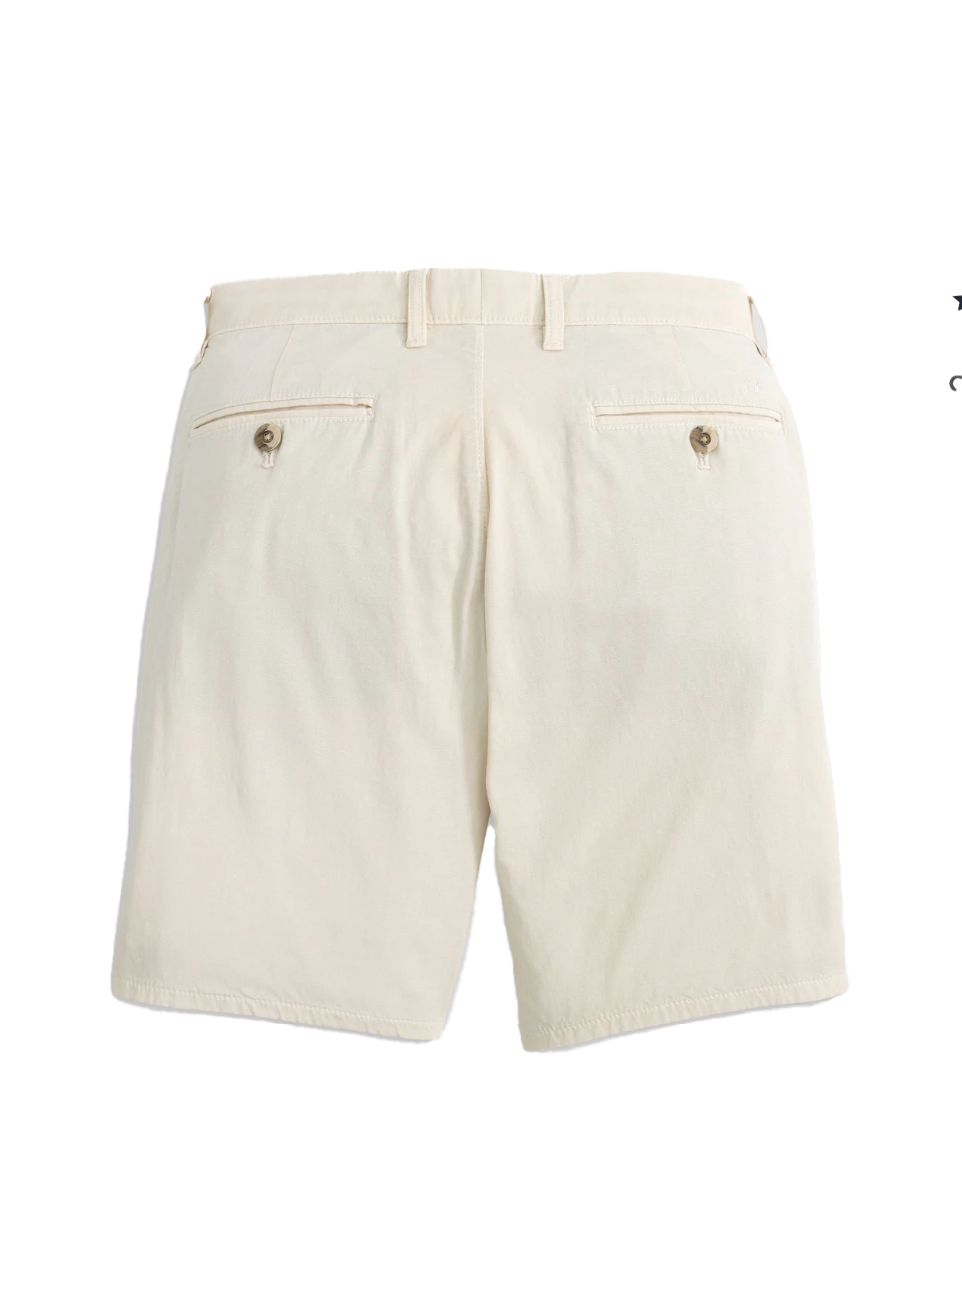 8" Nassau Cotton Blend Shorts Stone